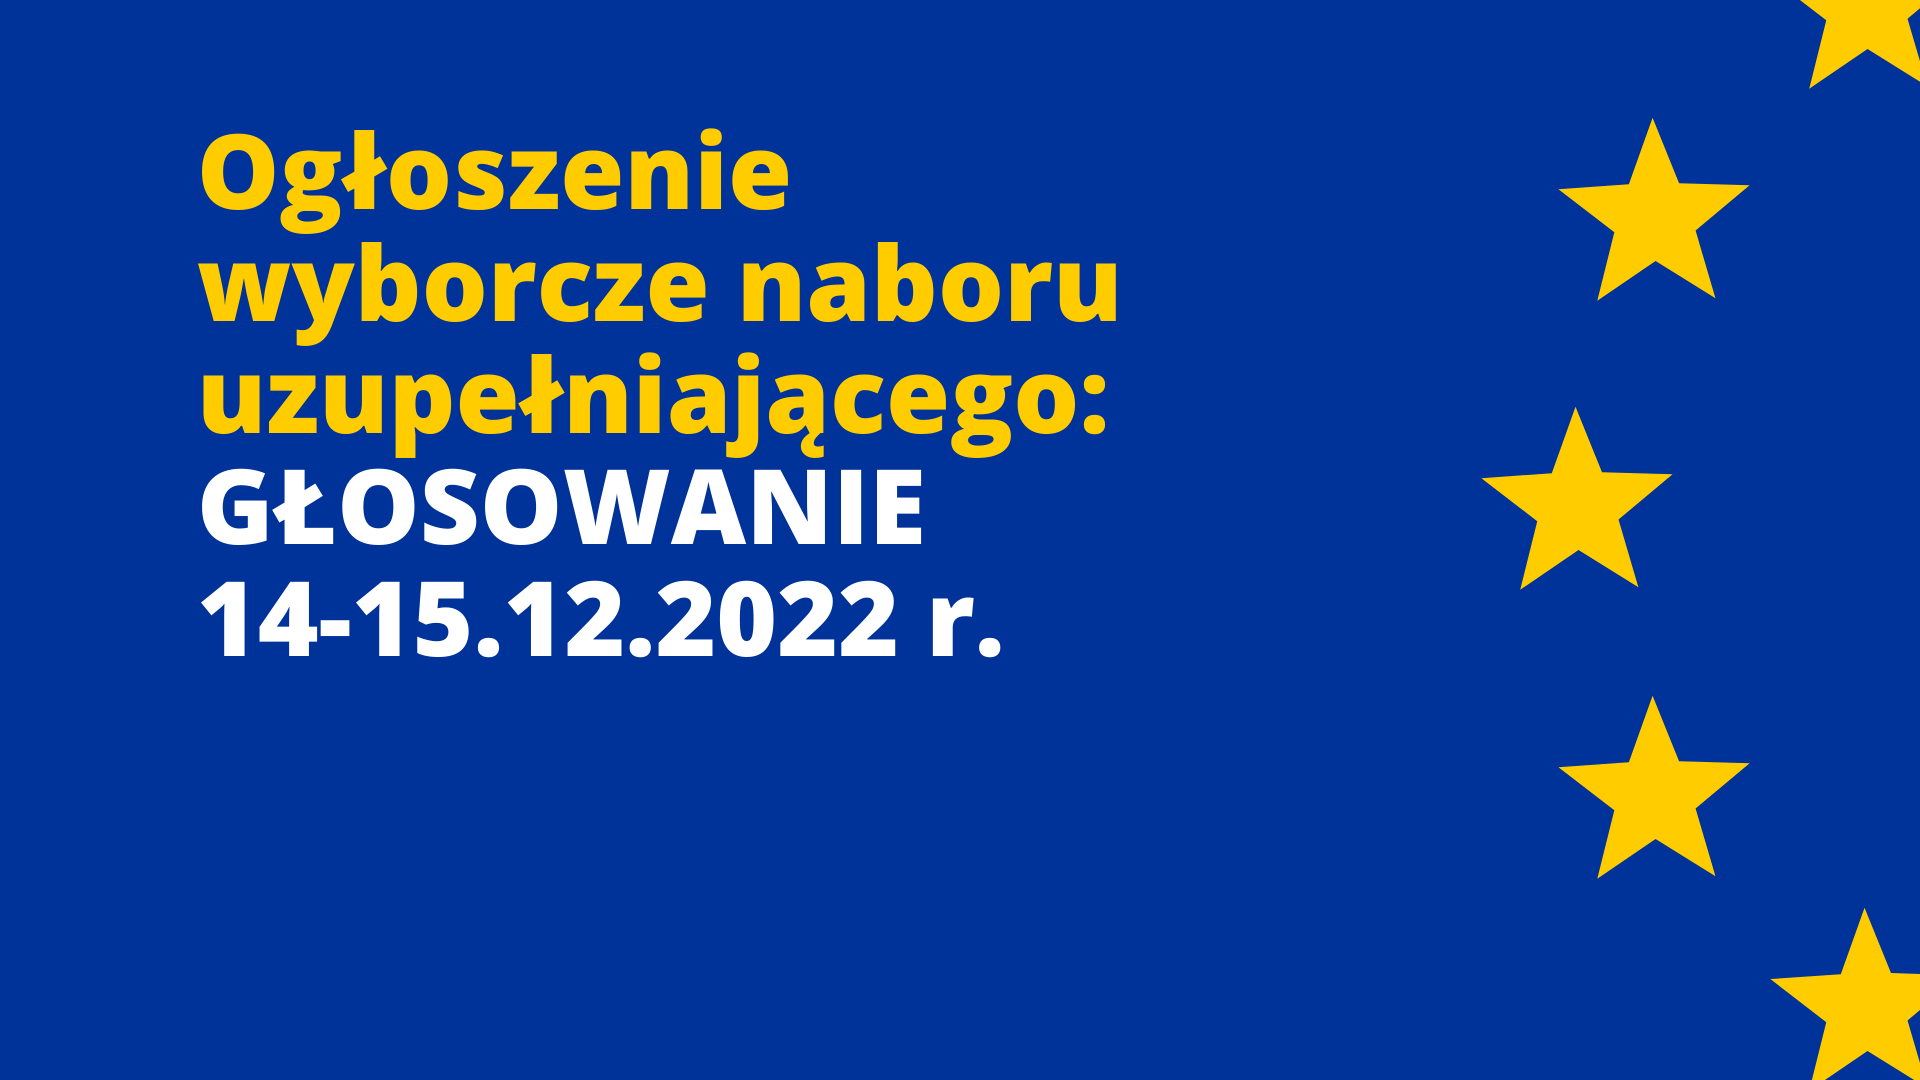 Ogłoszenie wyborcze naboru uzupełniającego – głosowanie 14-15.12.2022 r.